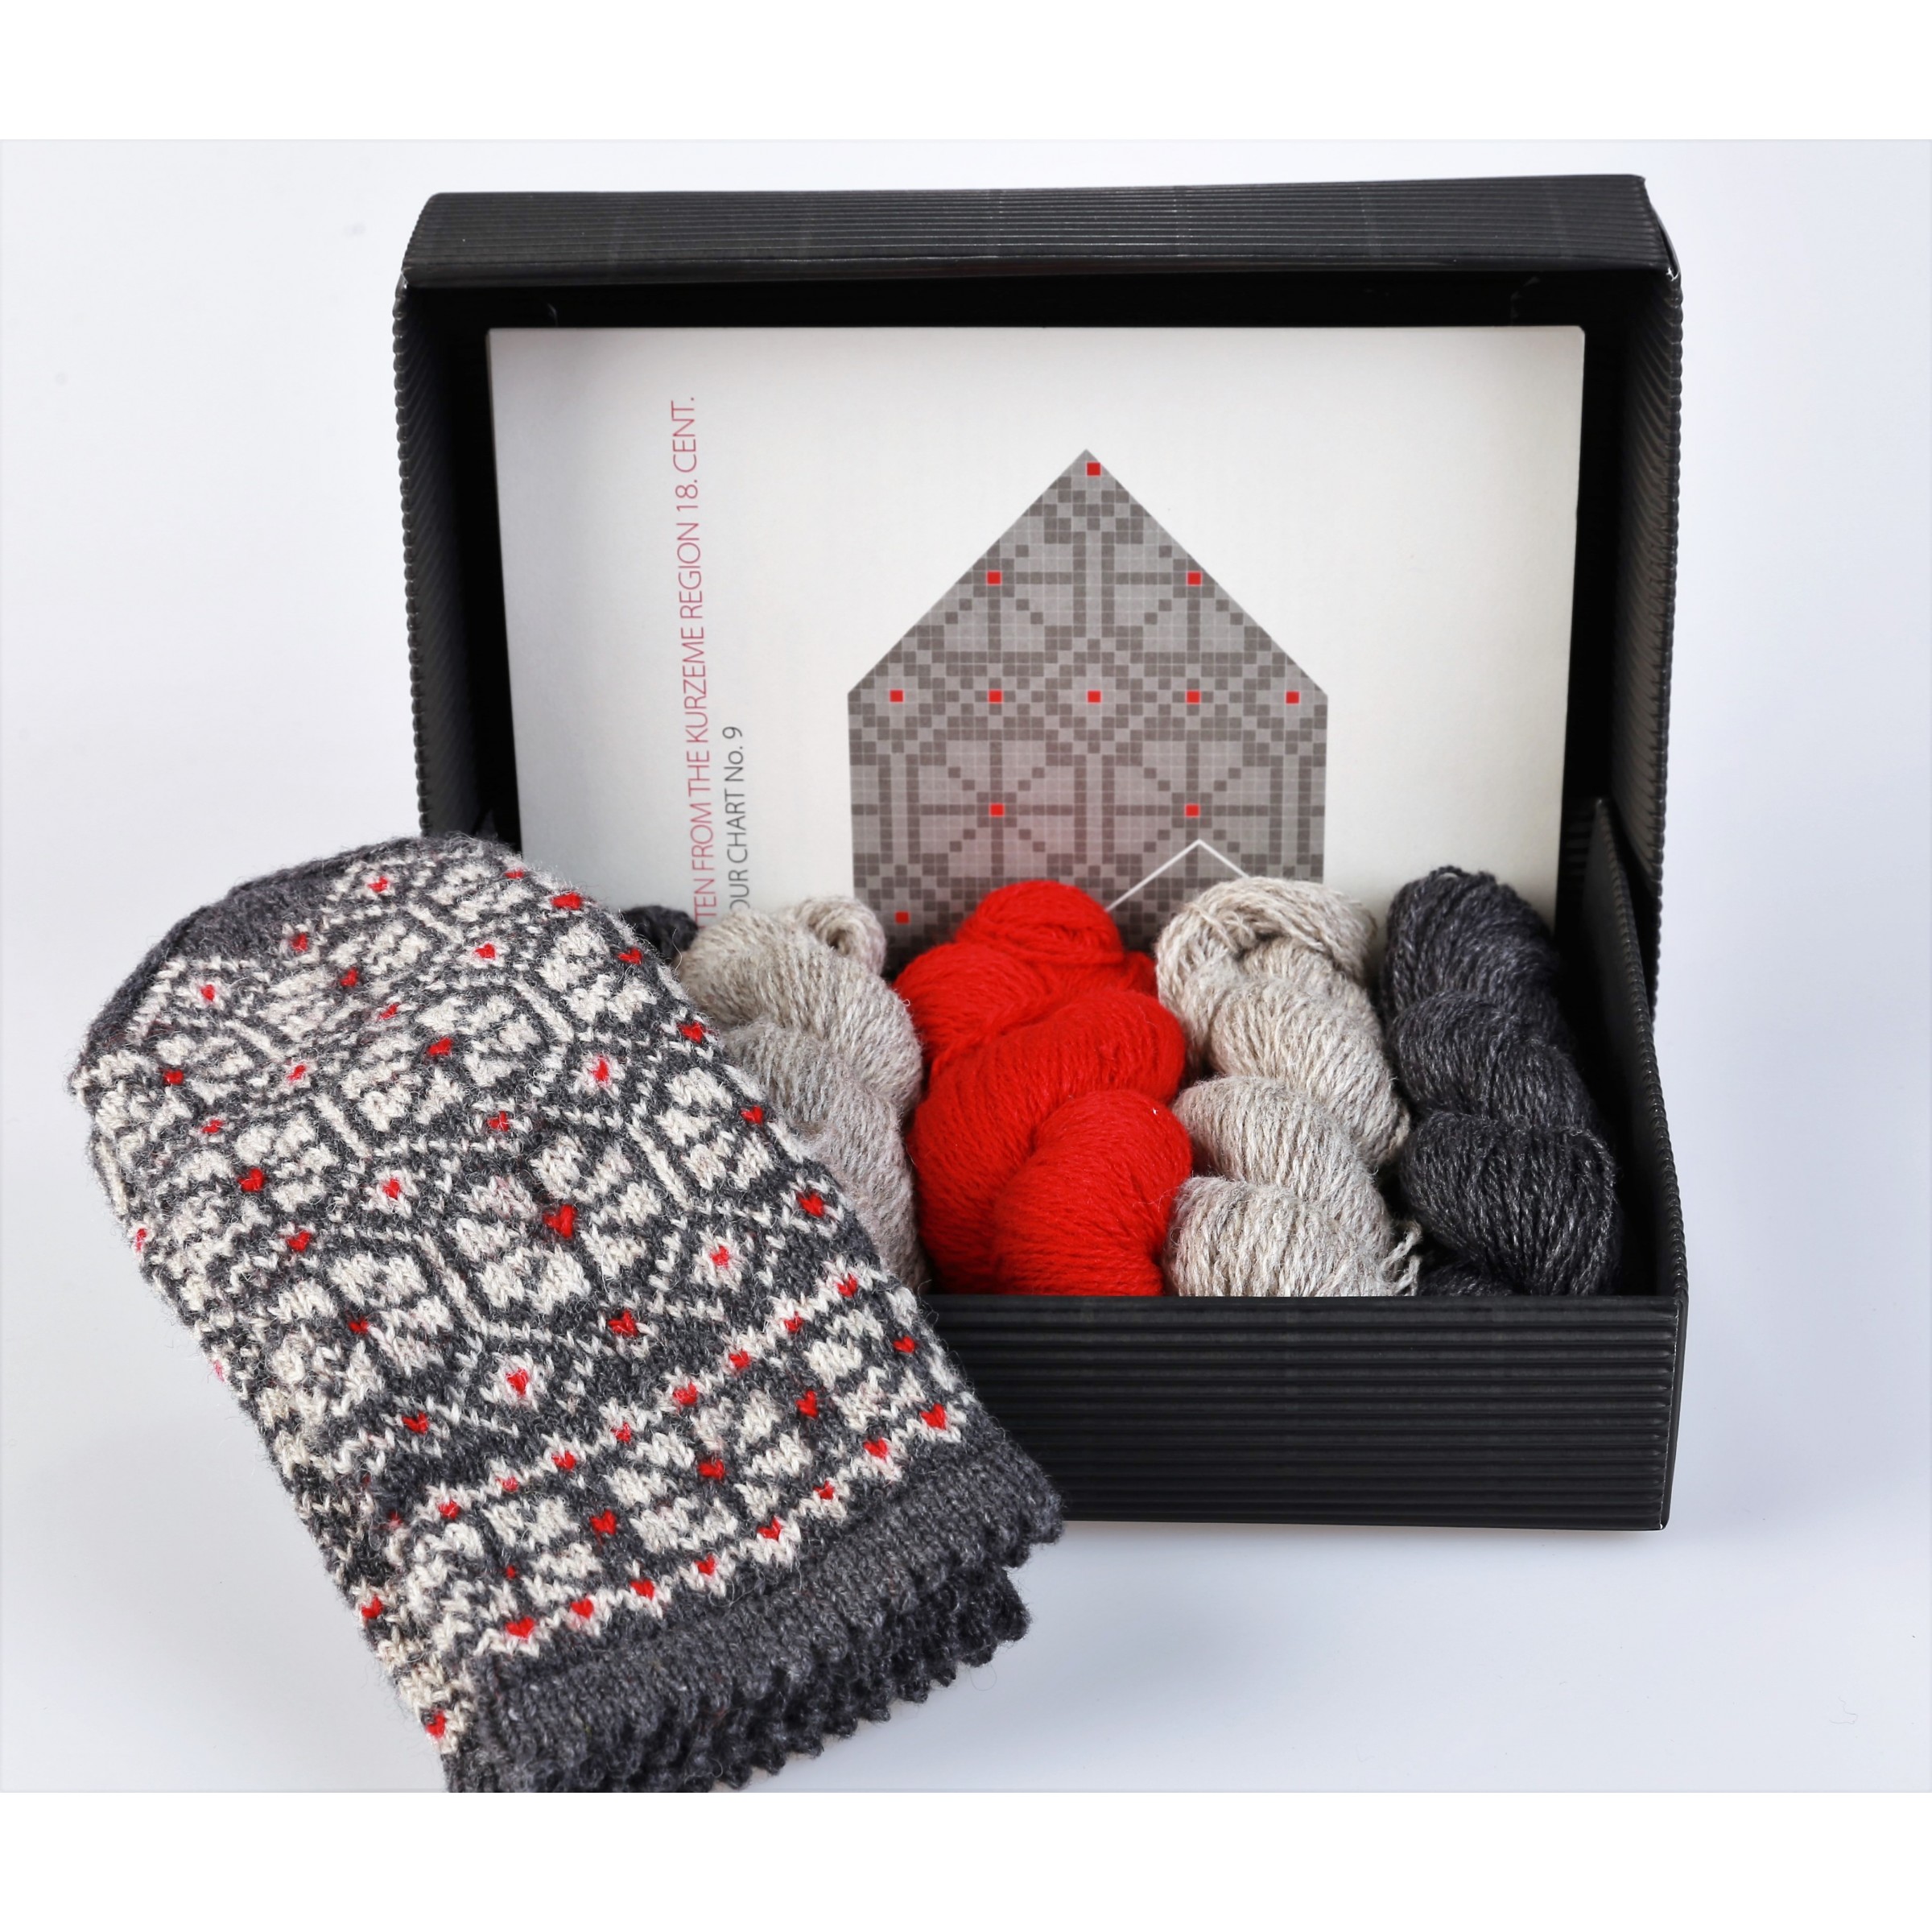 Latvian mittens knitting kit "Knit like a Latvian" pattern Kurzeme 9